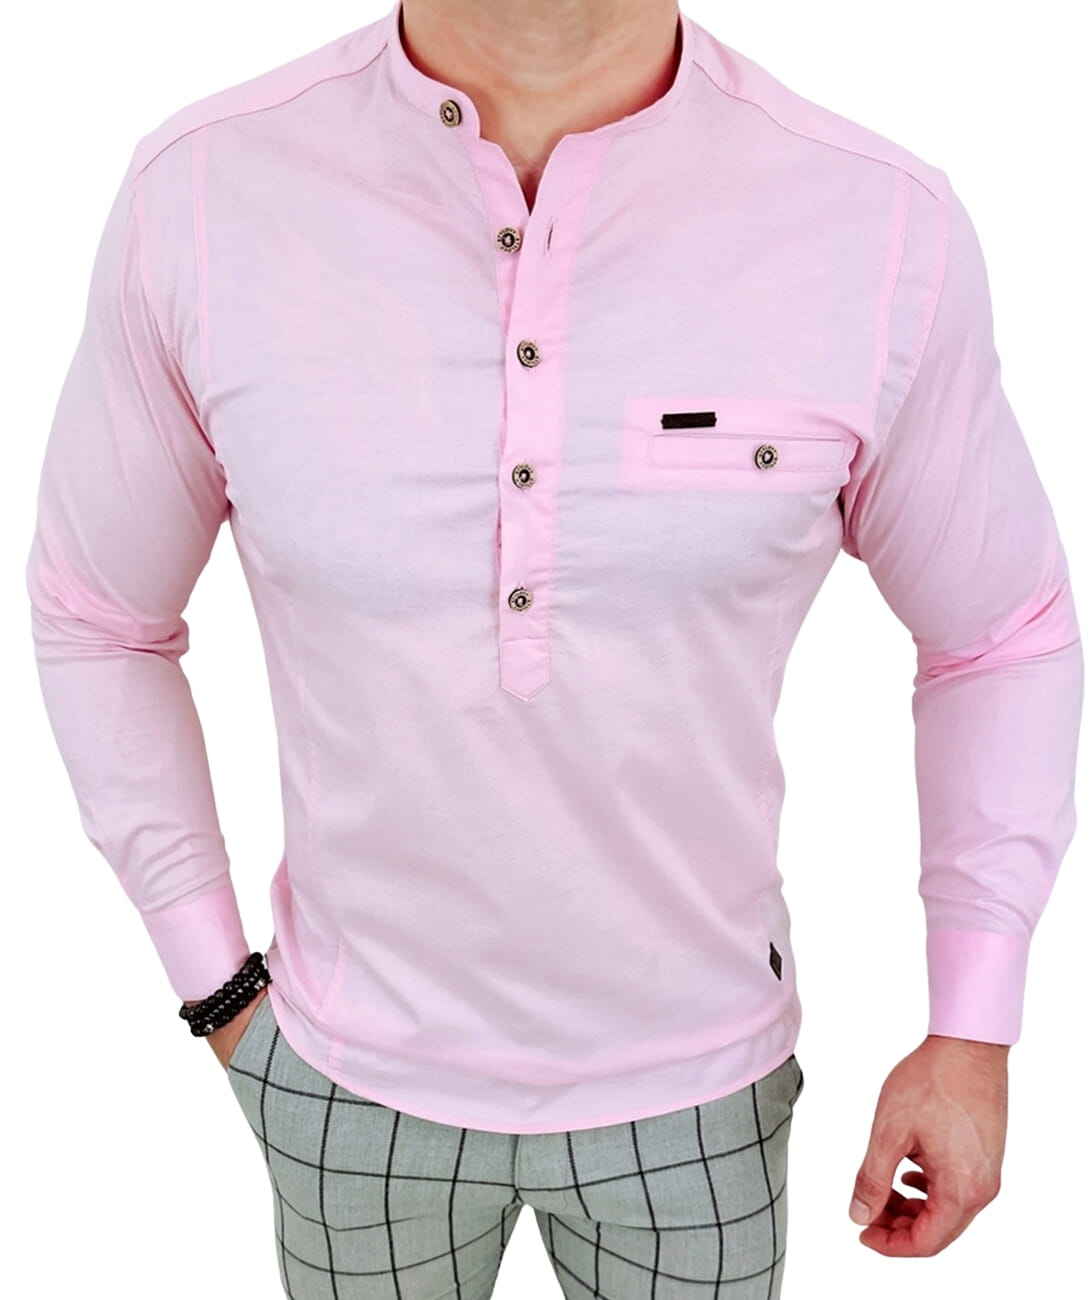 Koszula meska ze stojka rozowa slim fit zapinana do polowy 1966